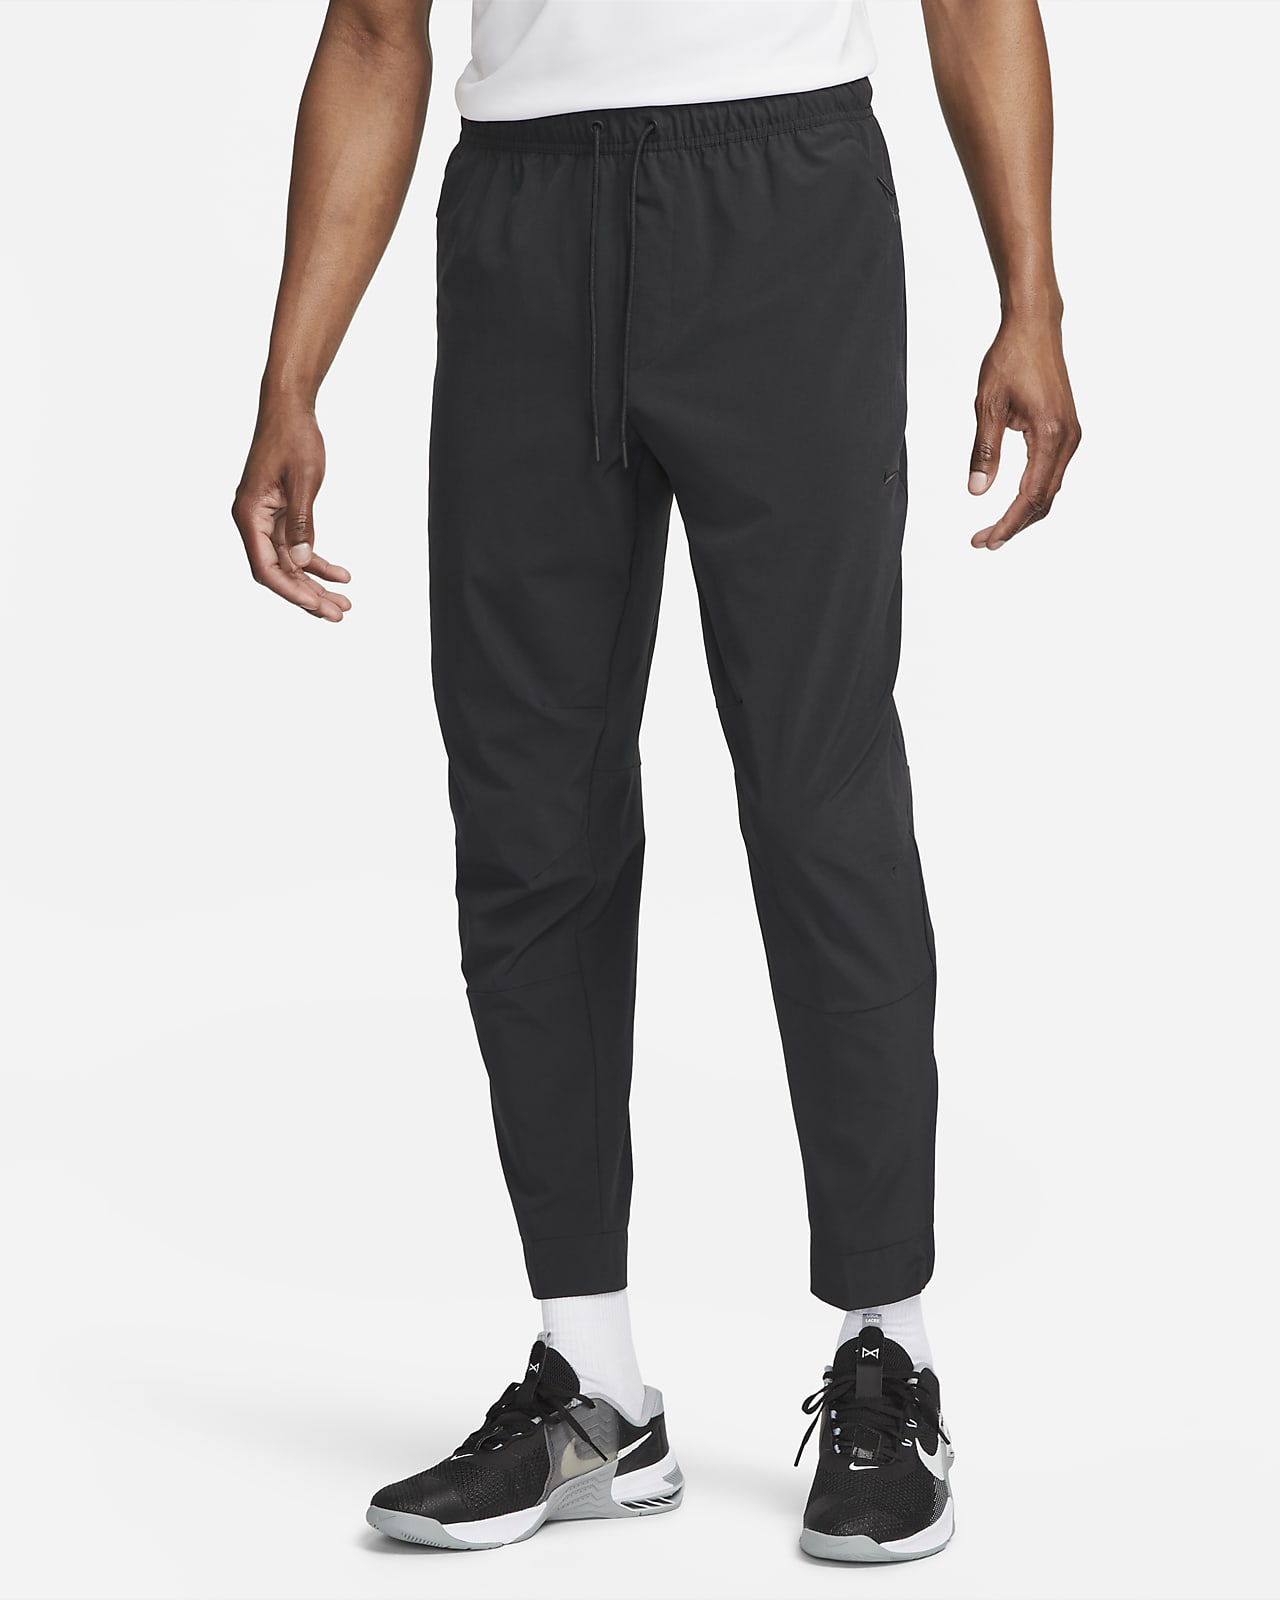 Nike Unlimited Pantalón versátil con bajos con cremallera Dri-FIT ADV - Hombre